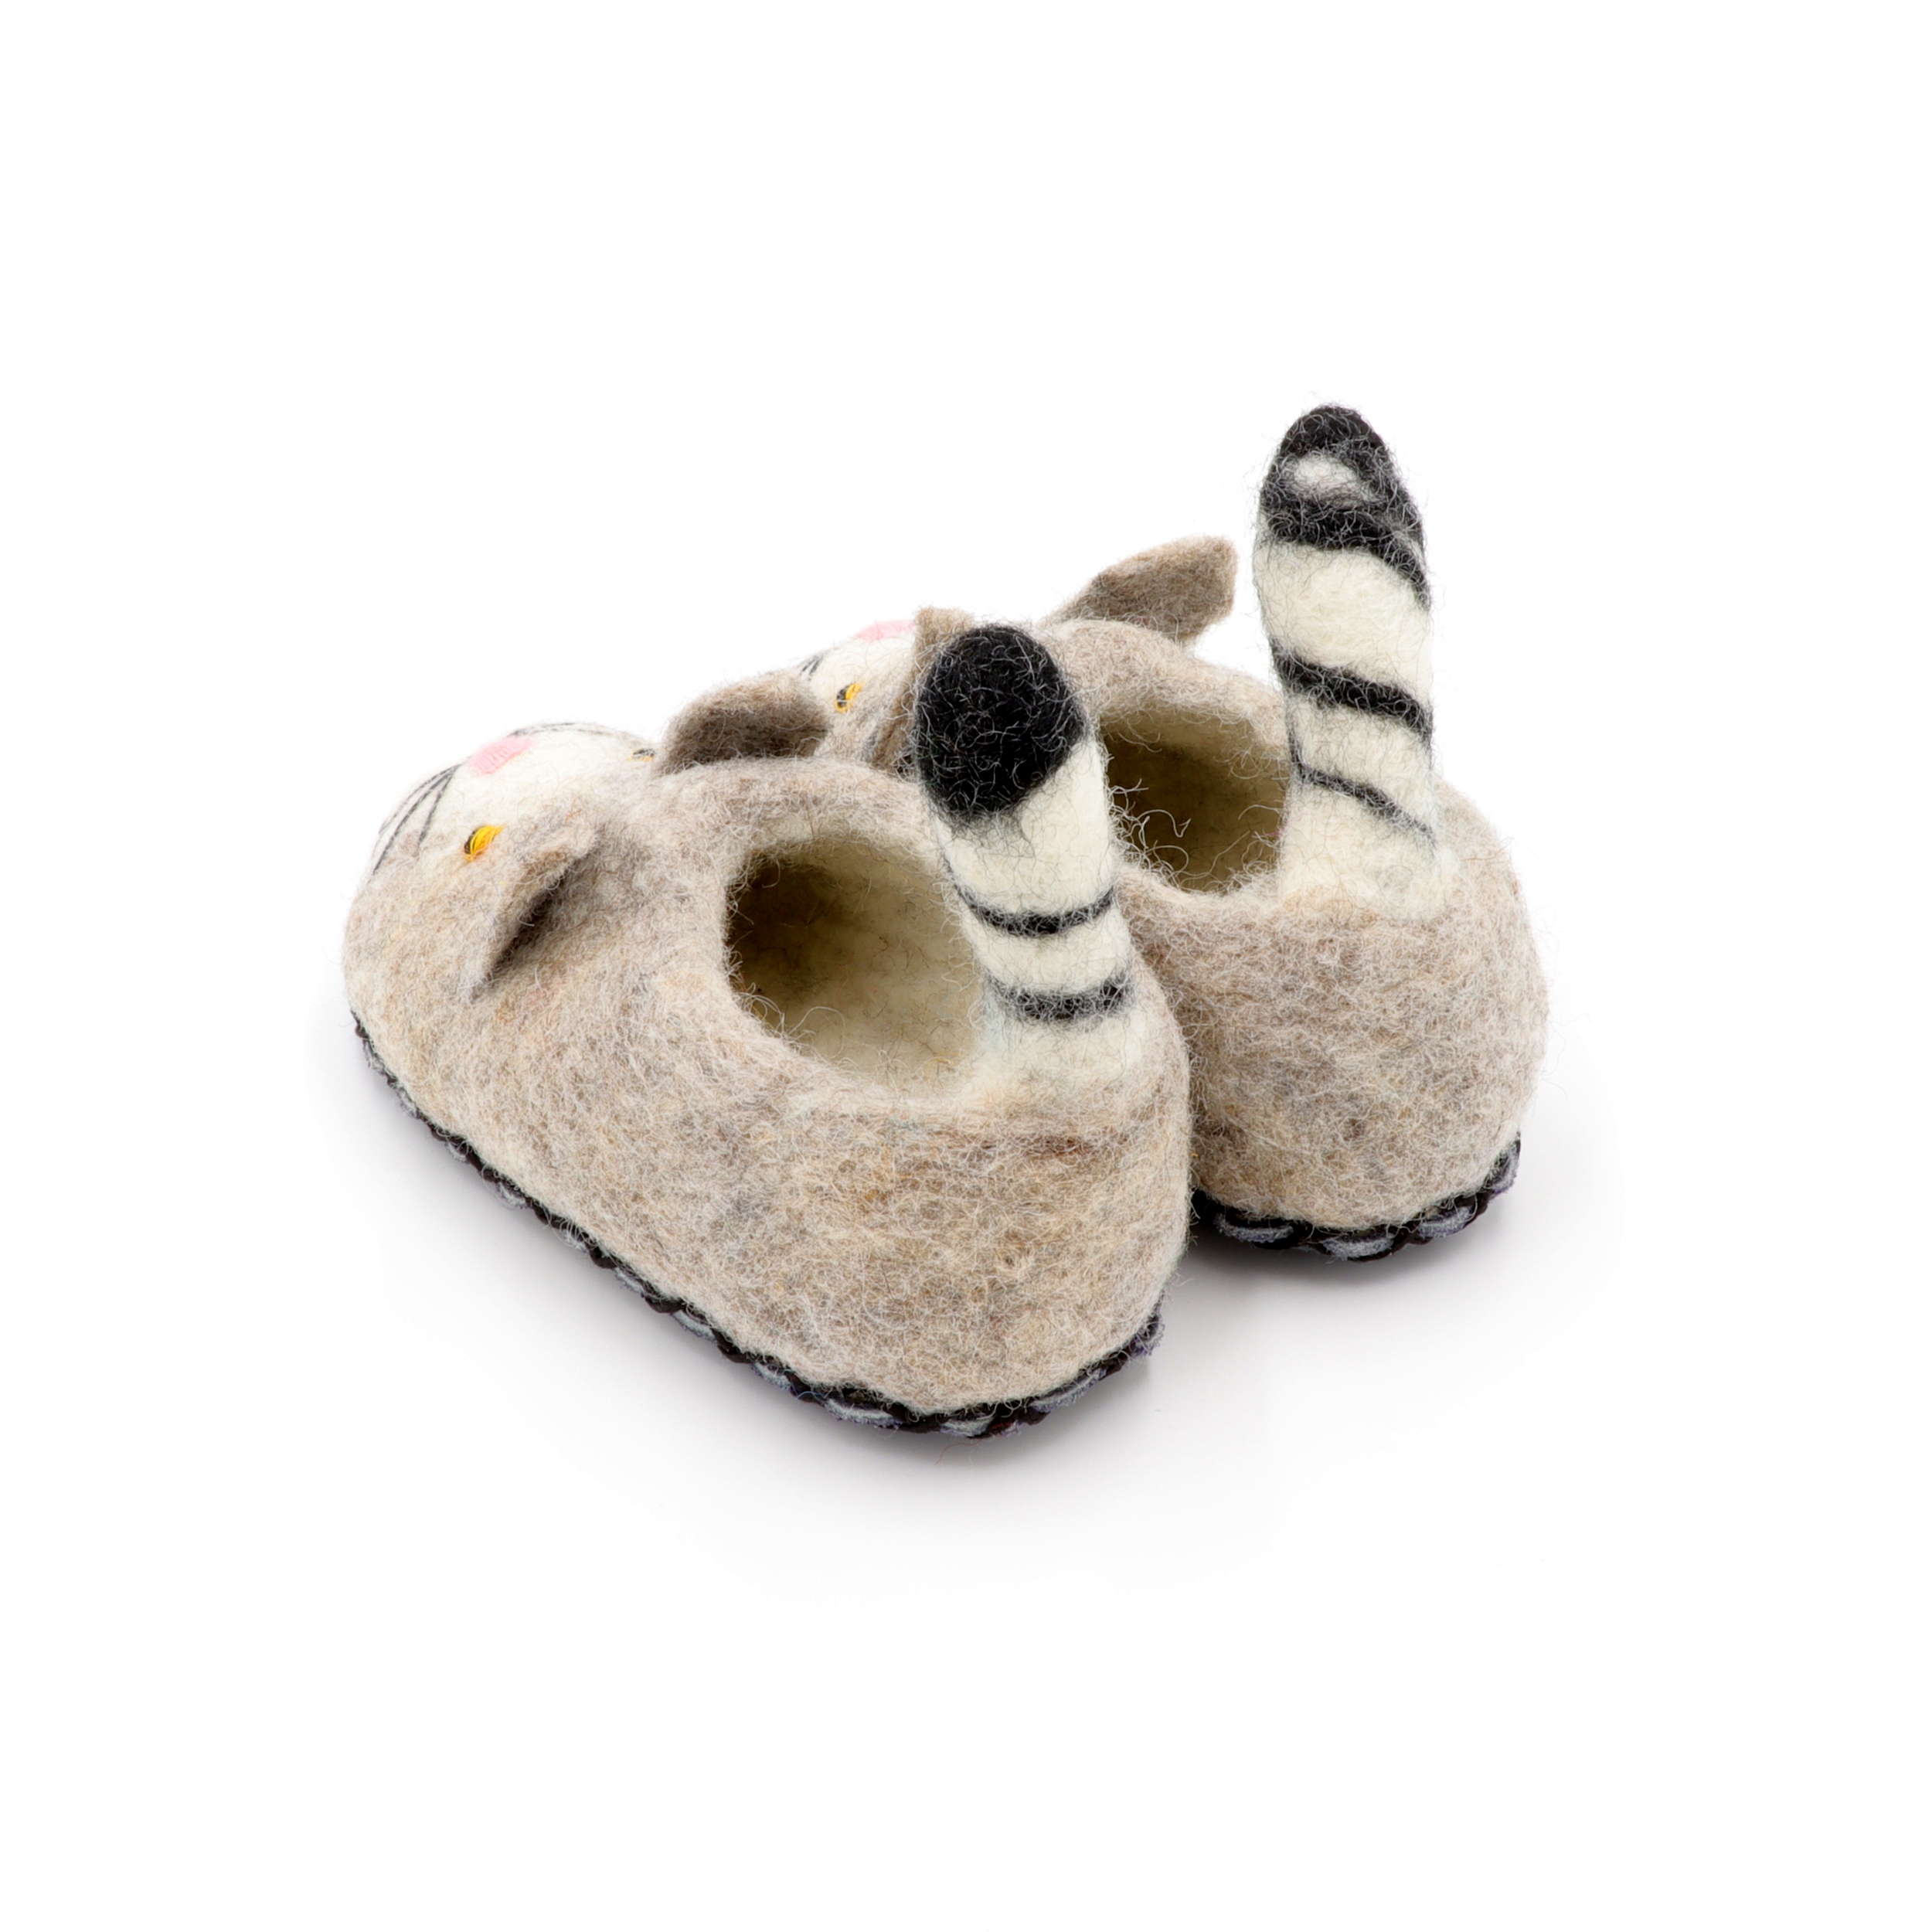 Schuhe aus Filz für Kinder - Die Graue Katze - rutschfeste Sohle aus Wildleder